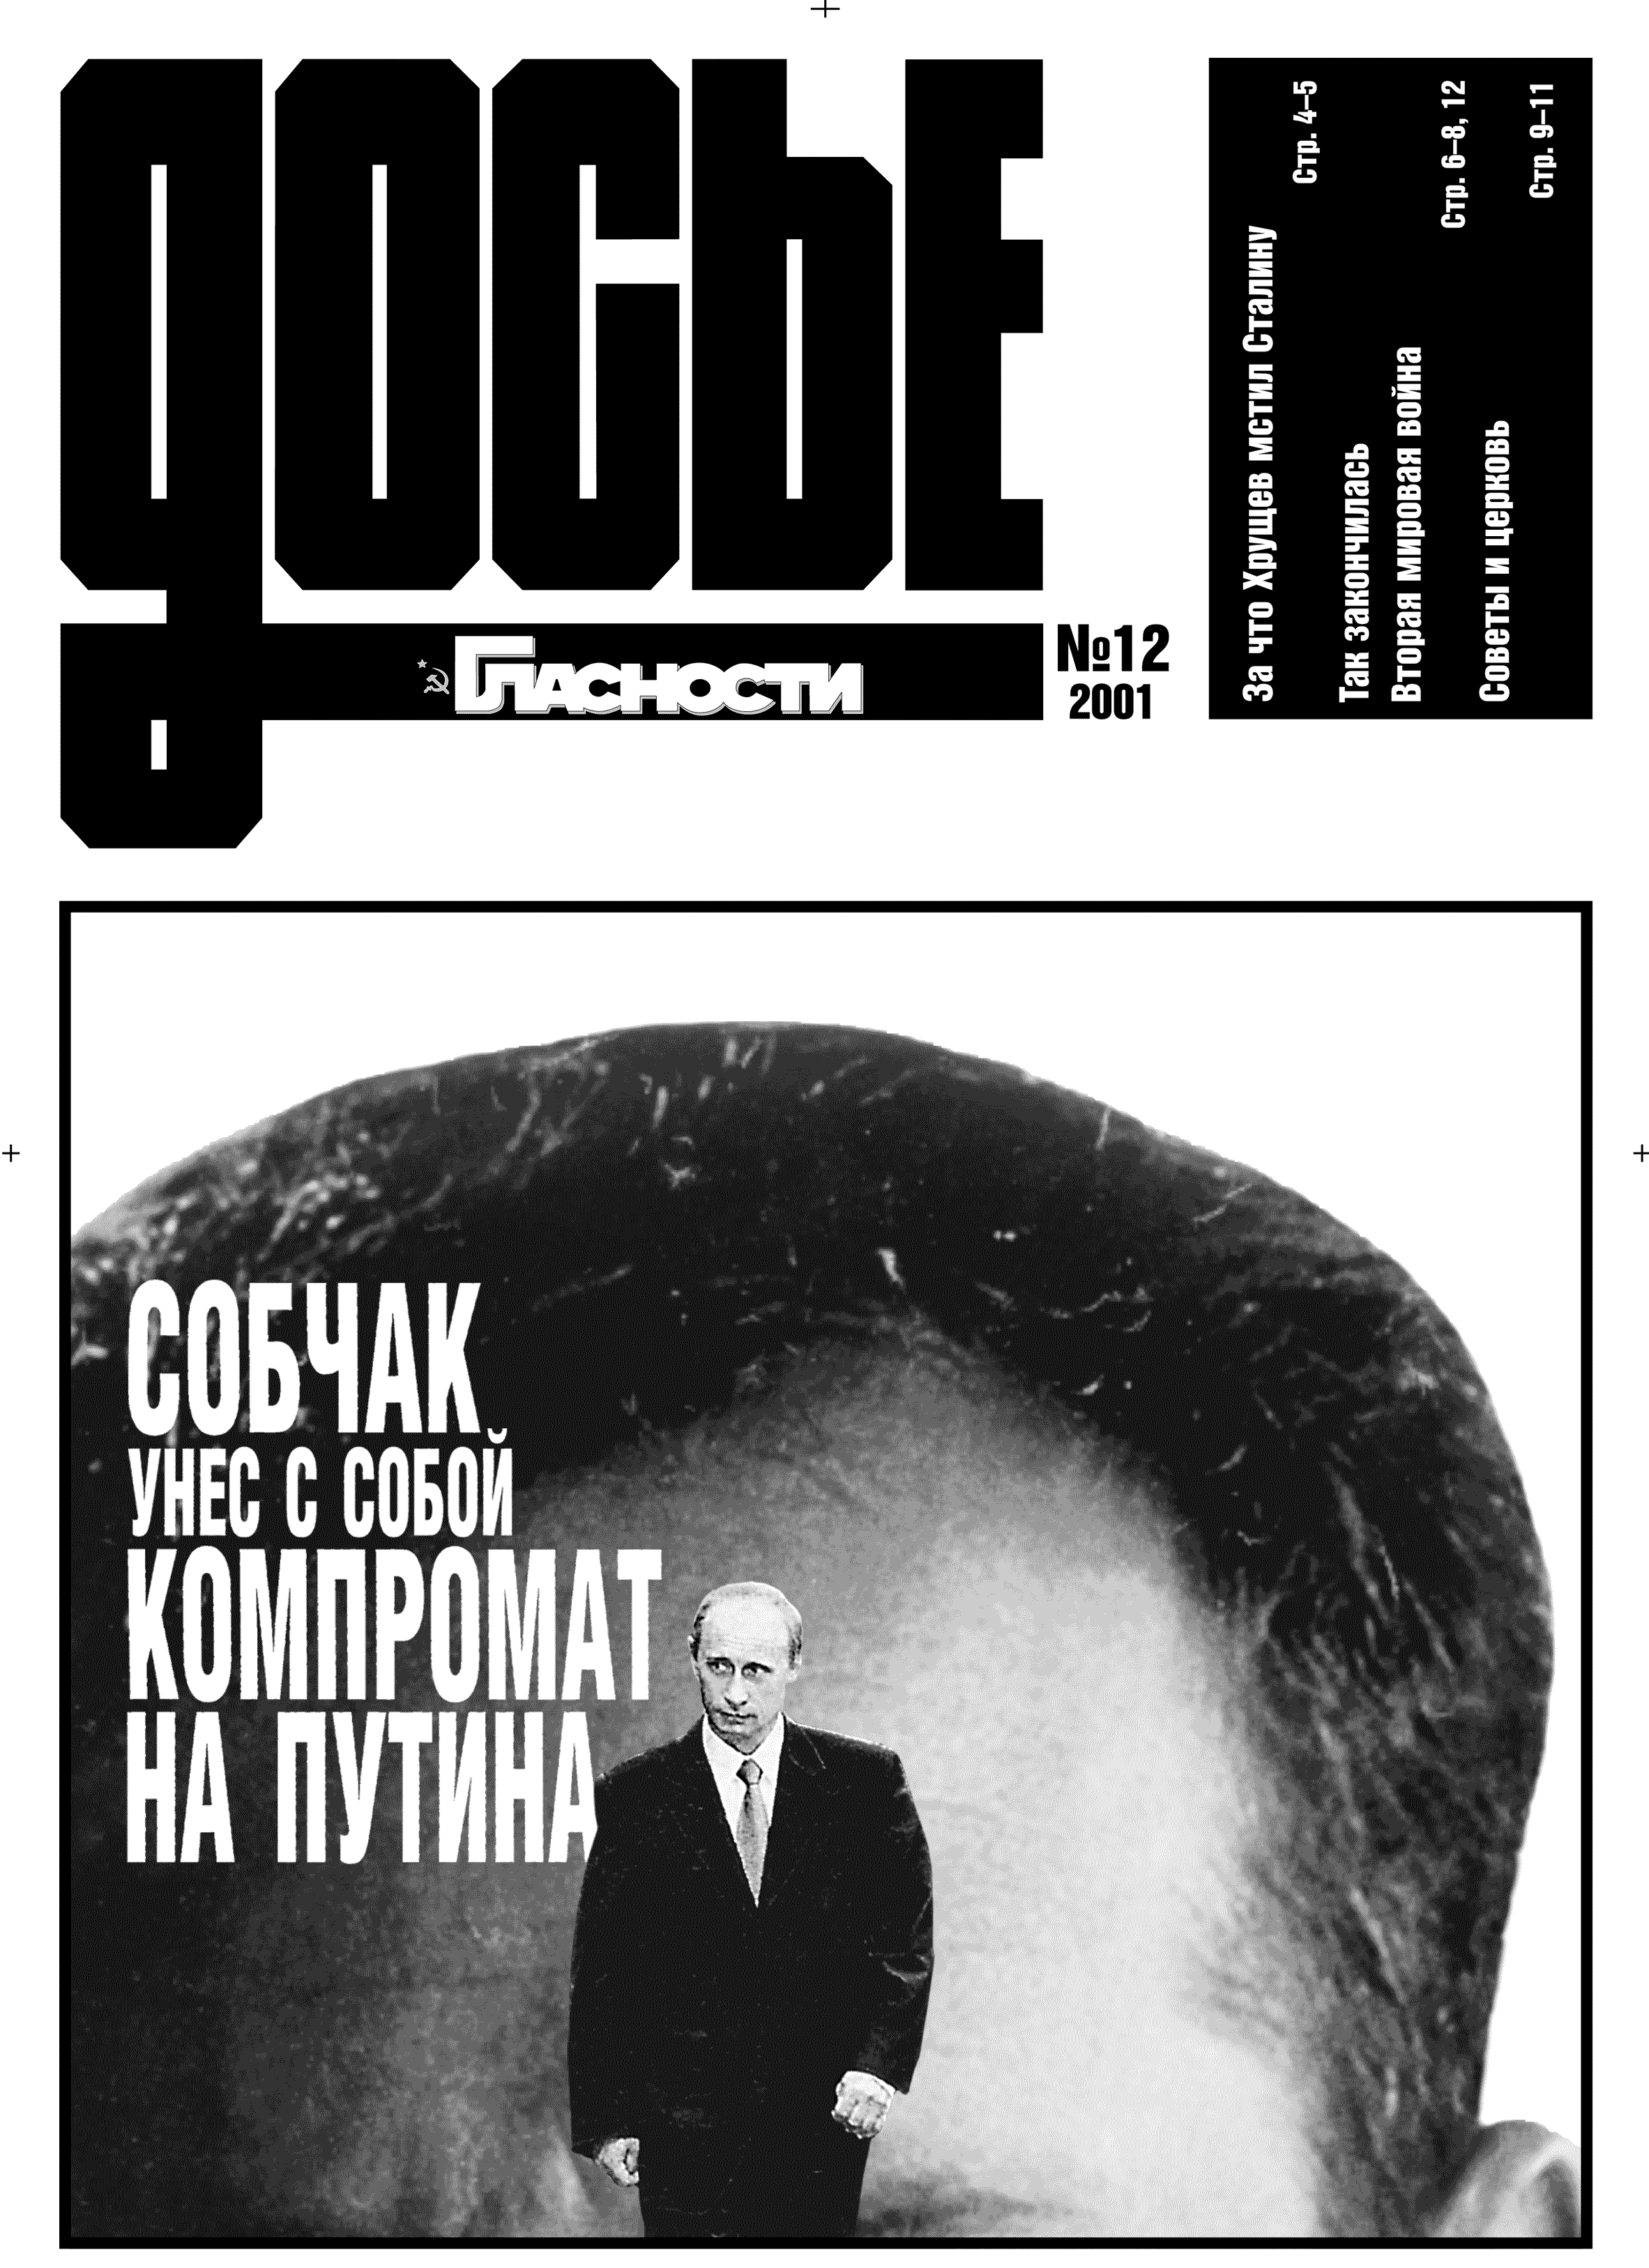 Сайт досье Юрия Изюмова. Компромат Собчака на Путина